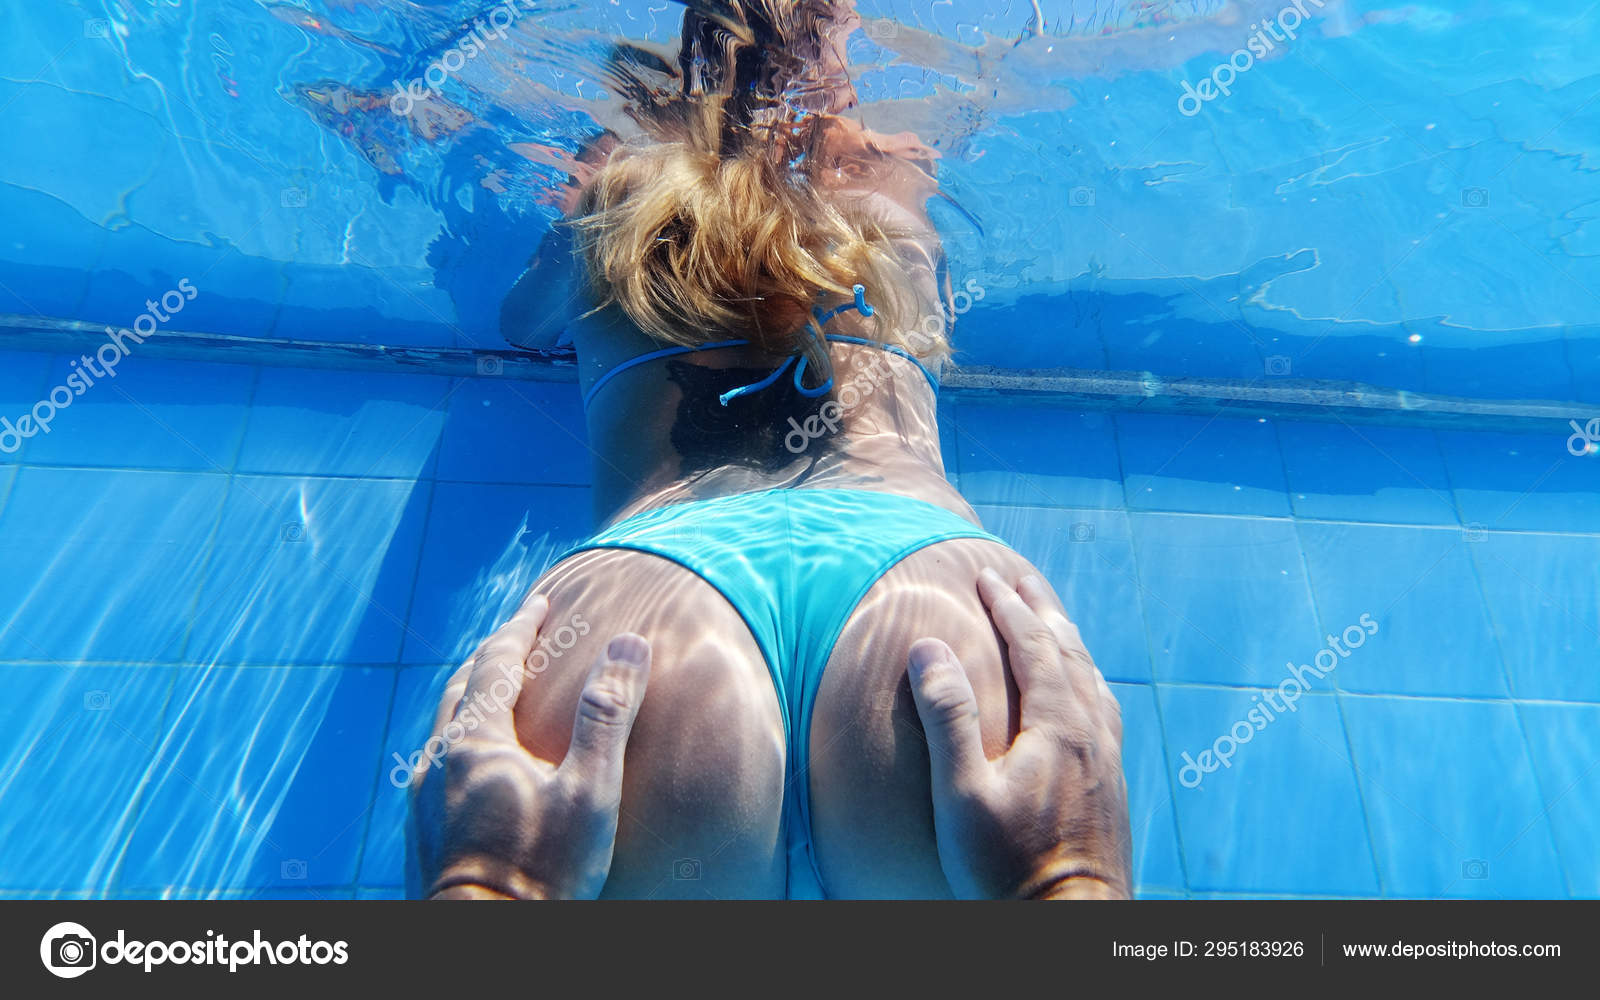 swimming pool girl ass